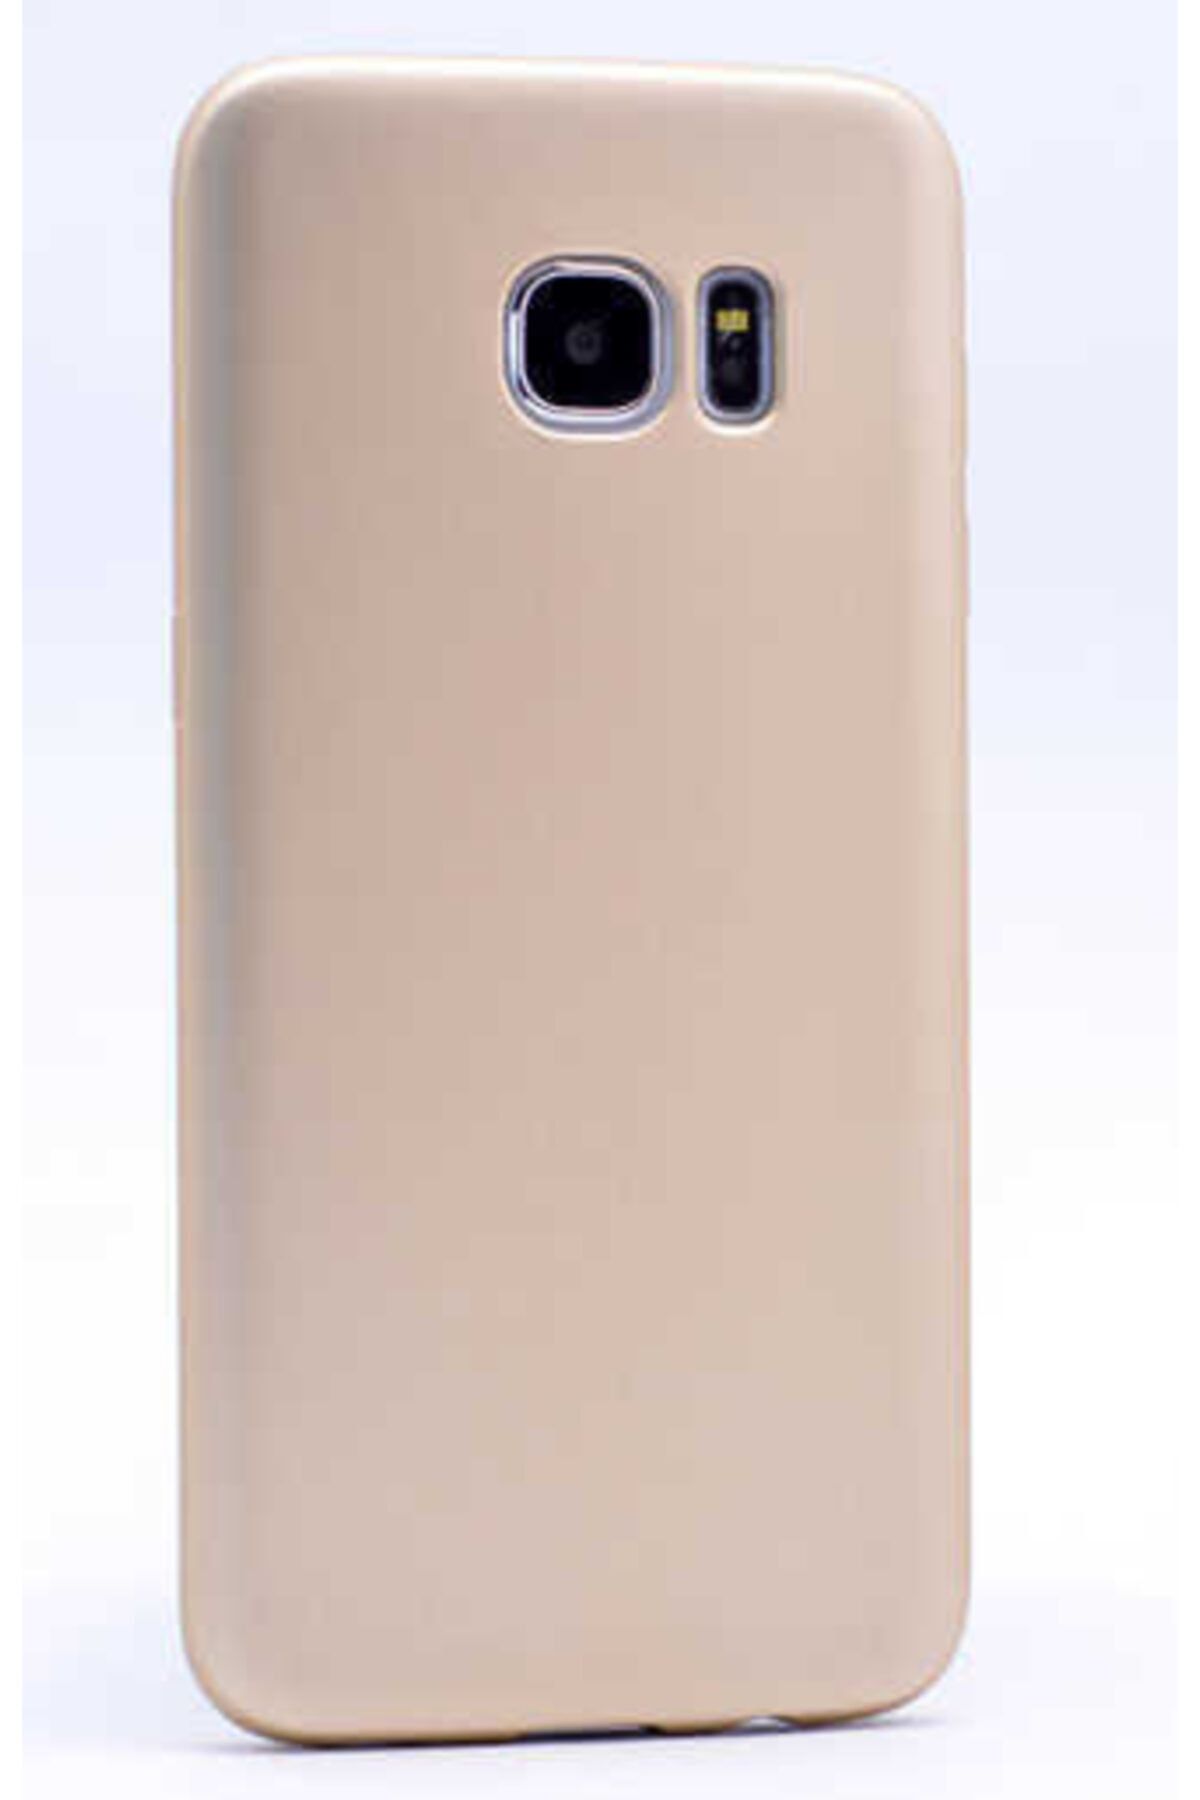 İncisoft Galaxy S7 Uyumlu Ince Yumuşak Soft Tasarım Renkli Silikon Kılıf